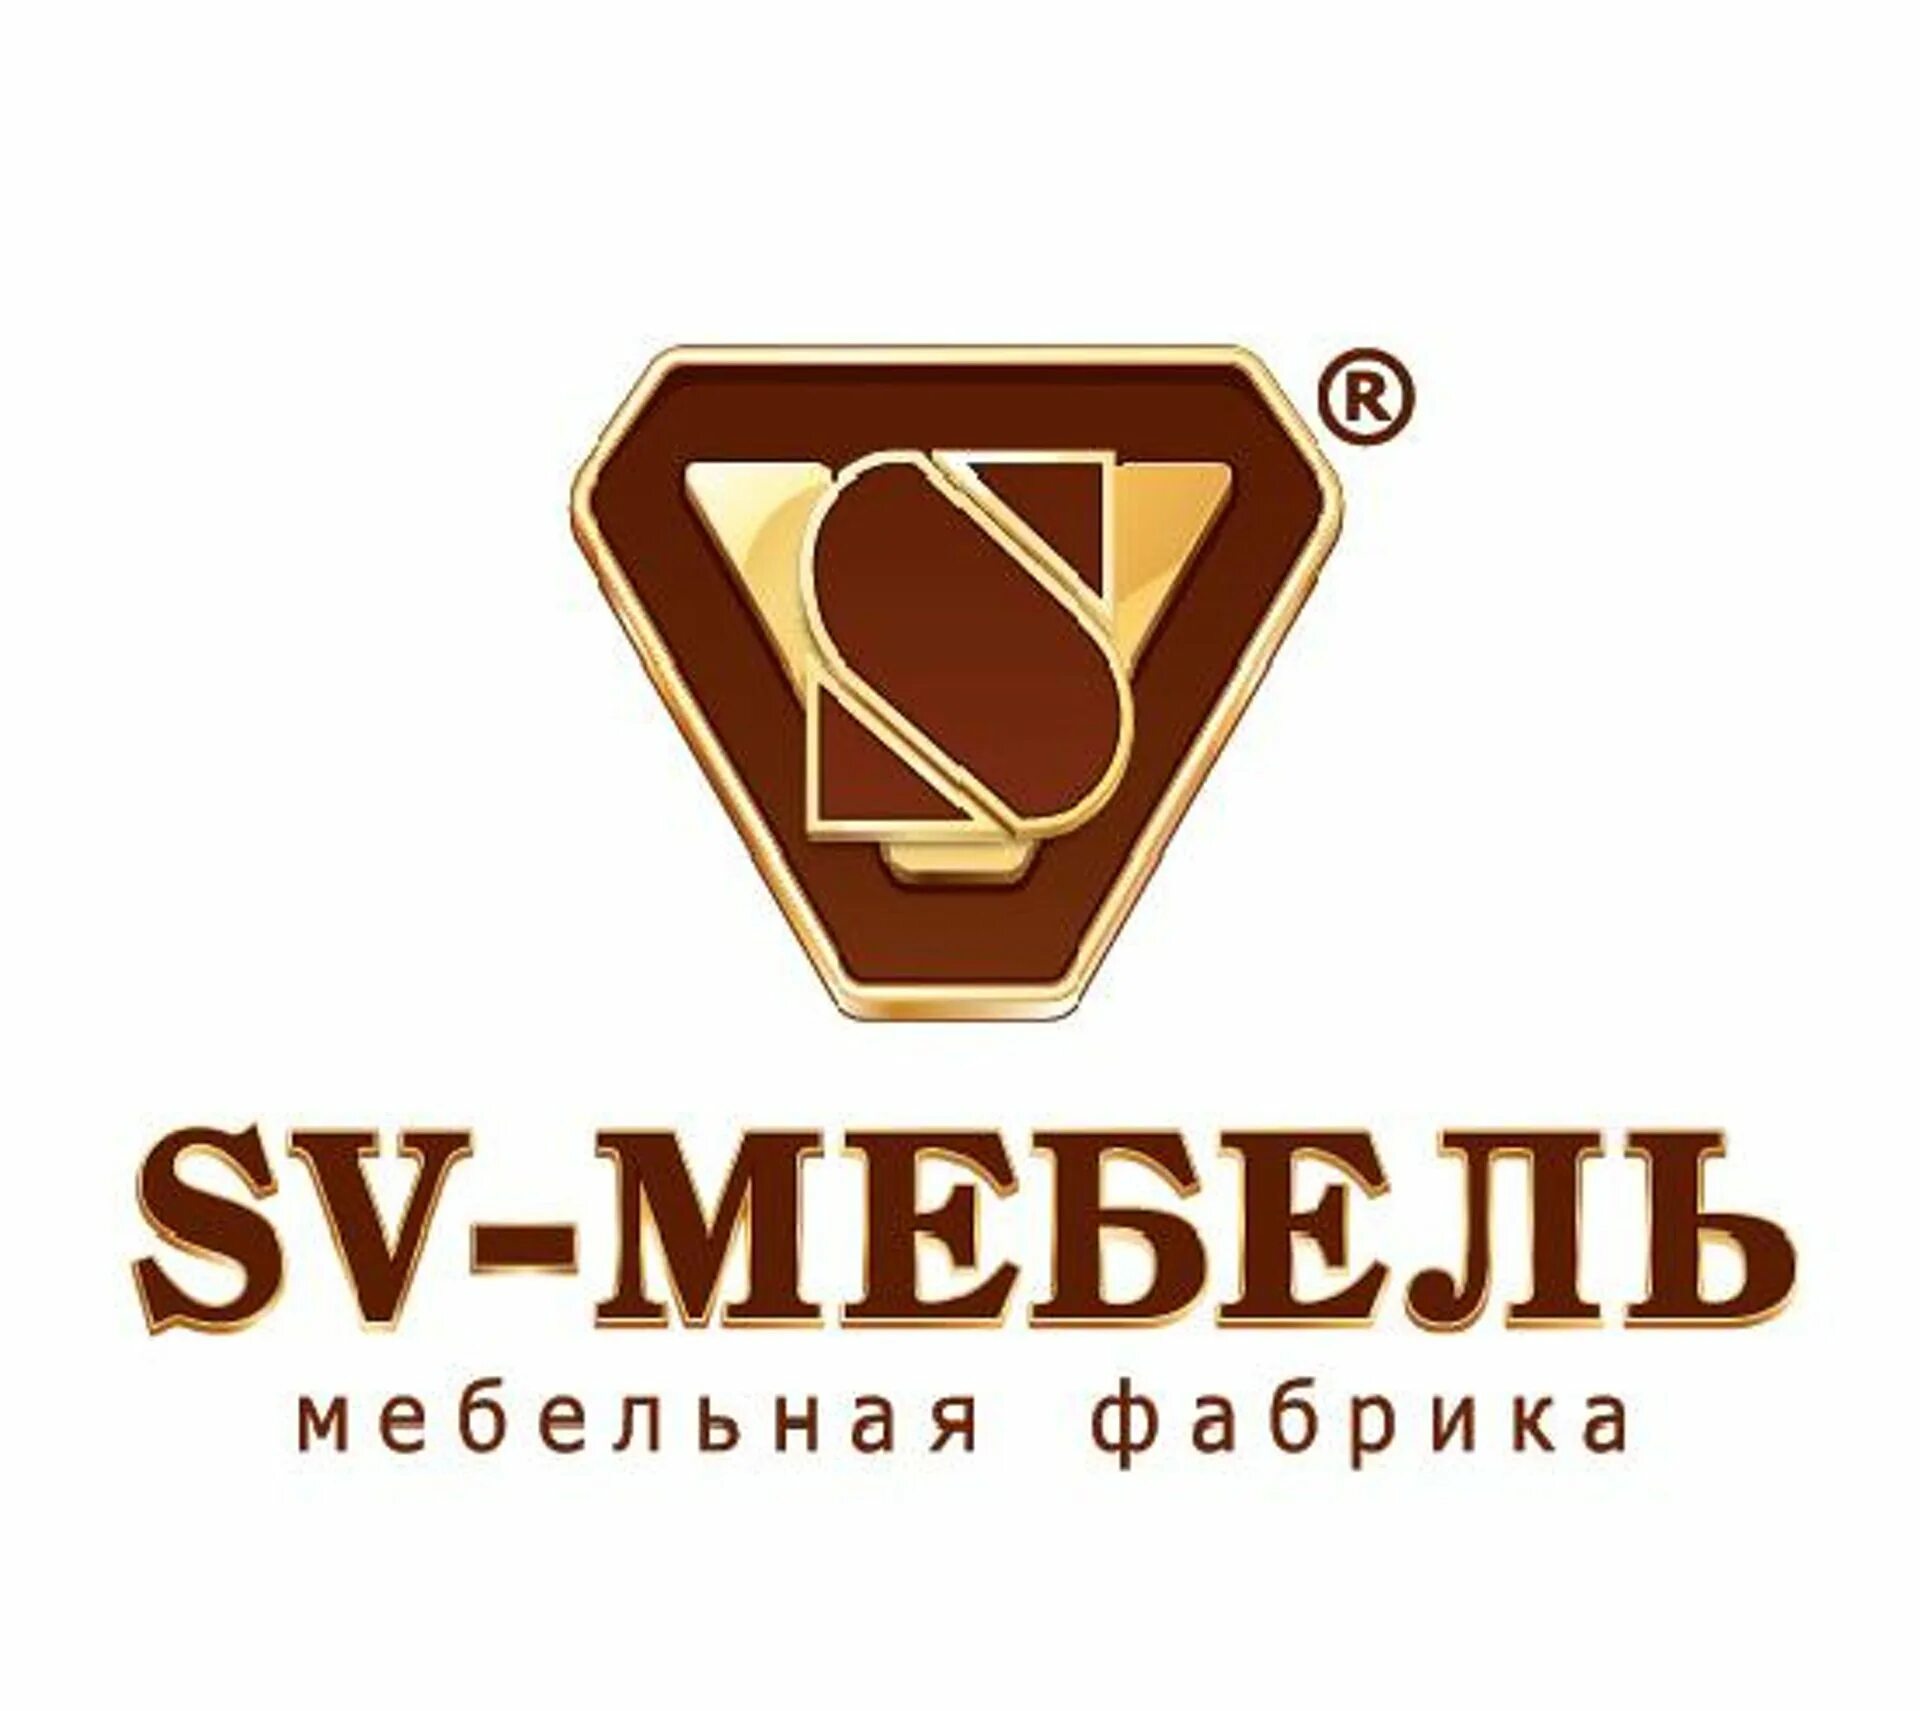 Организации св. SV mebel логотип. Логотип мебельной фабрики. Значок фабрика мебели. Фабрика мебели значьуи.